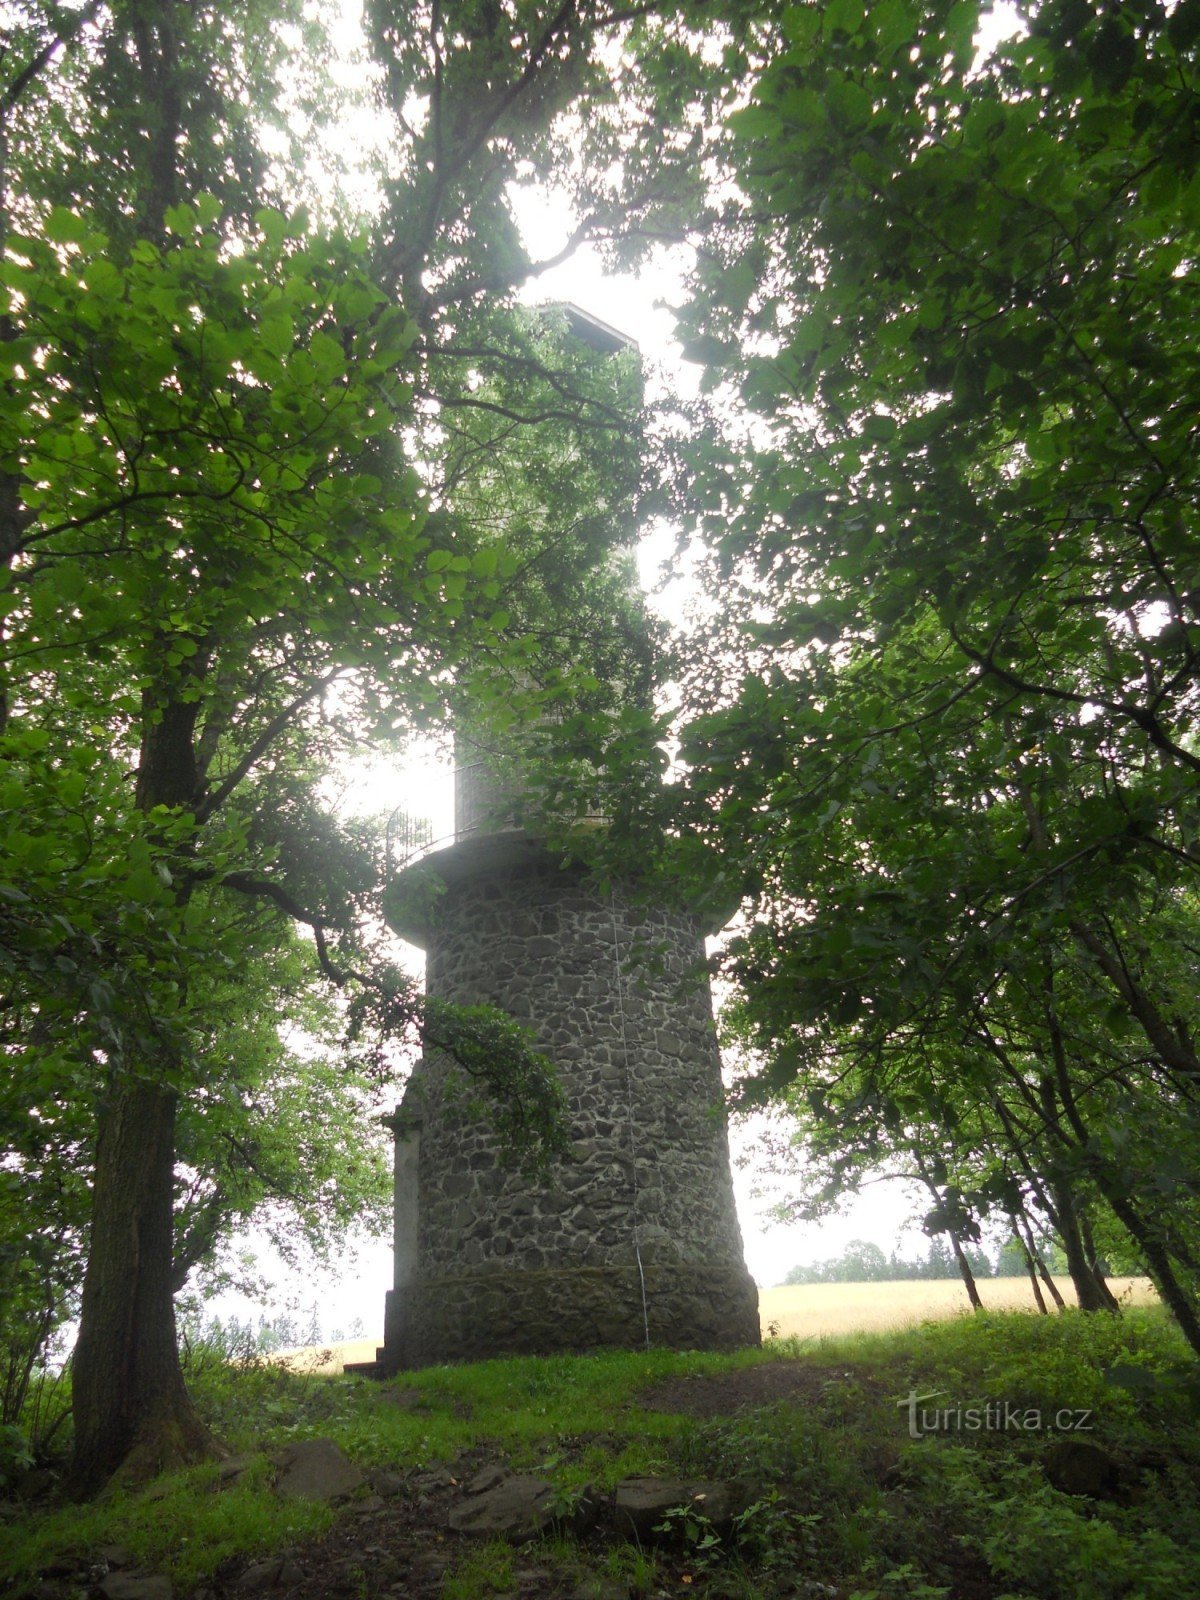 Torre vigía Velký Chlum cerca de Děčín.